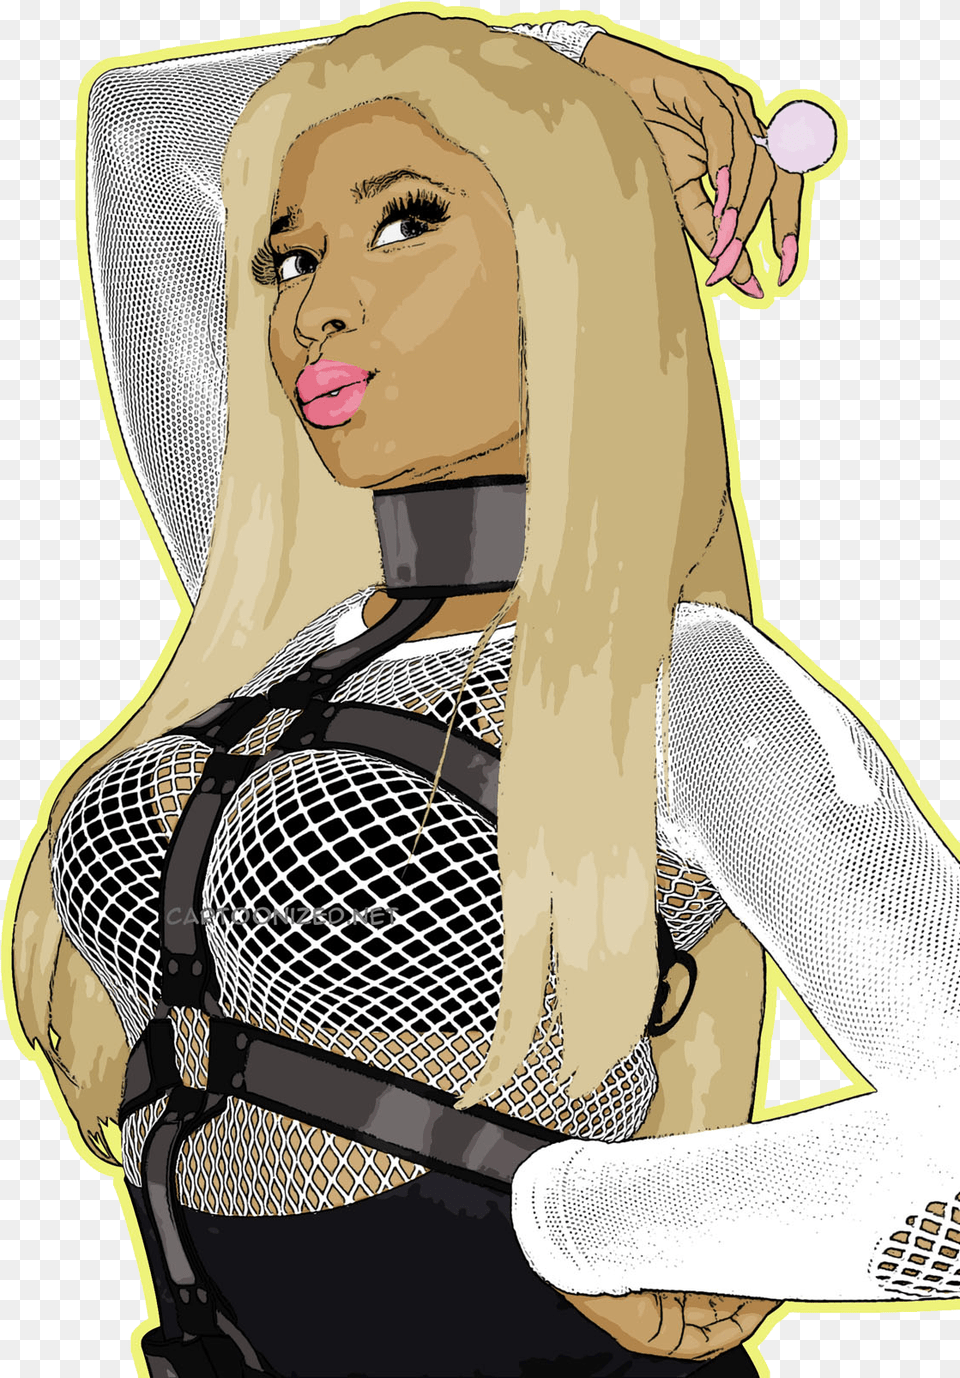 Nicki Minaj Download Cartoon Pictures Of Nicki Minaj, Blonde, Person, Hair, Adult Free Png